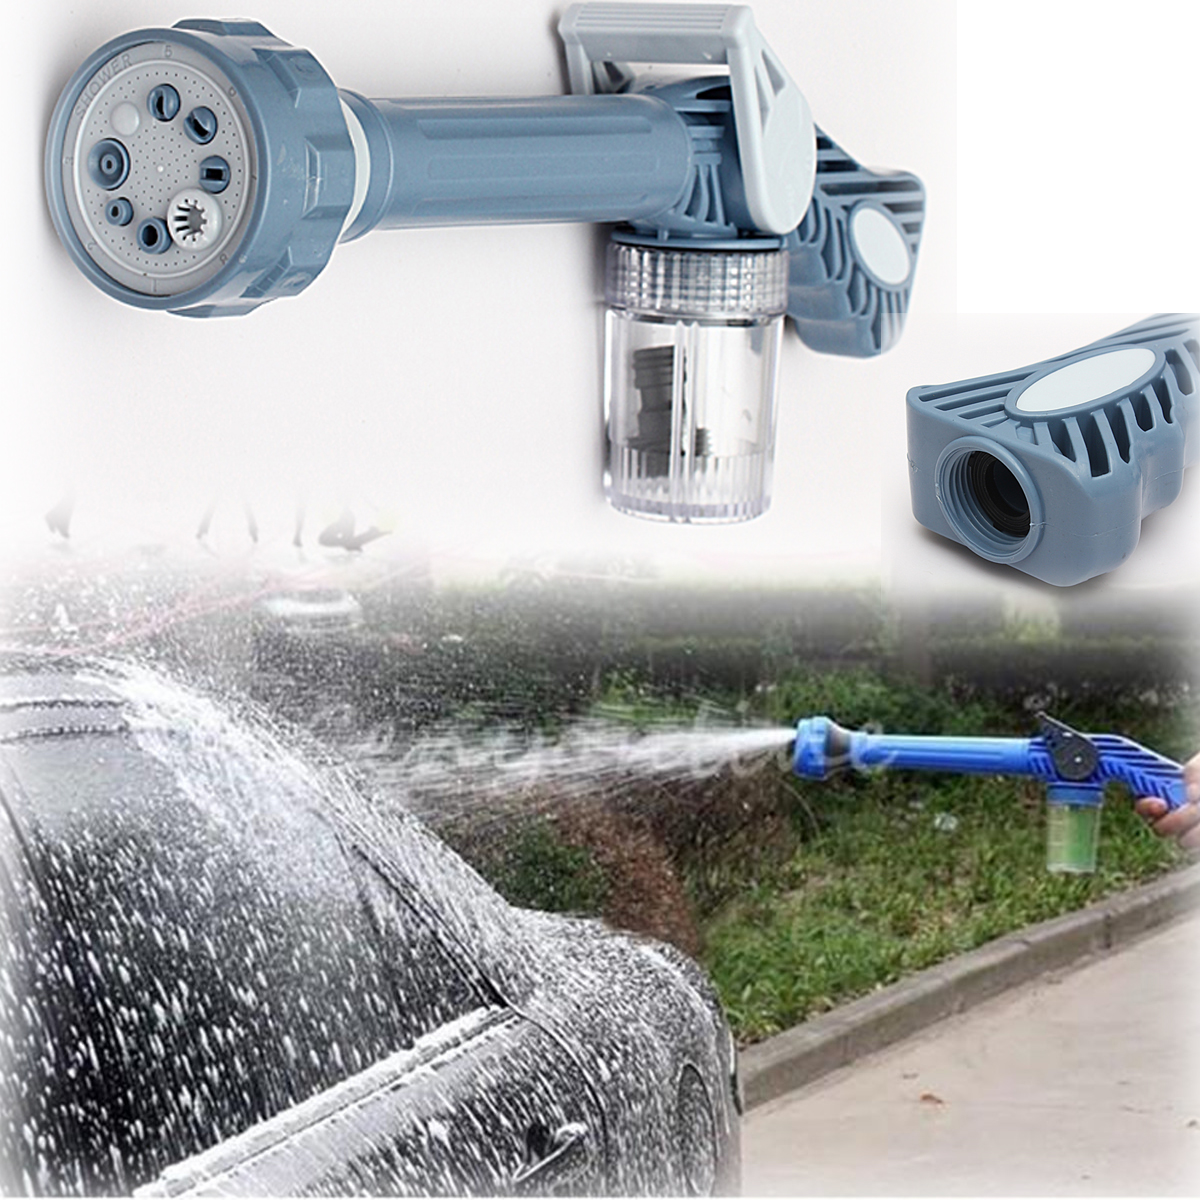 

Garden Soap Spray Gun 8 Nozzle Ez Jet Dispenser Pump Washer Car Water Wash Cleaning